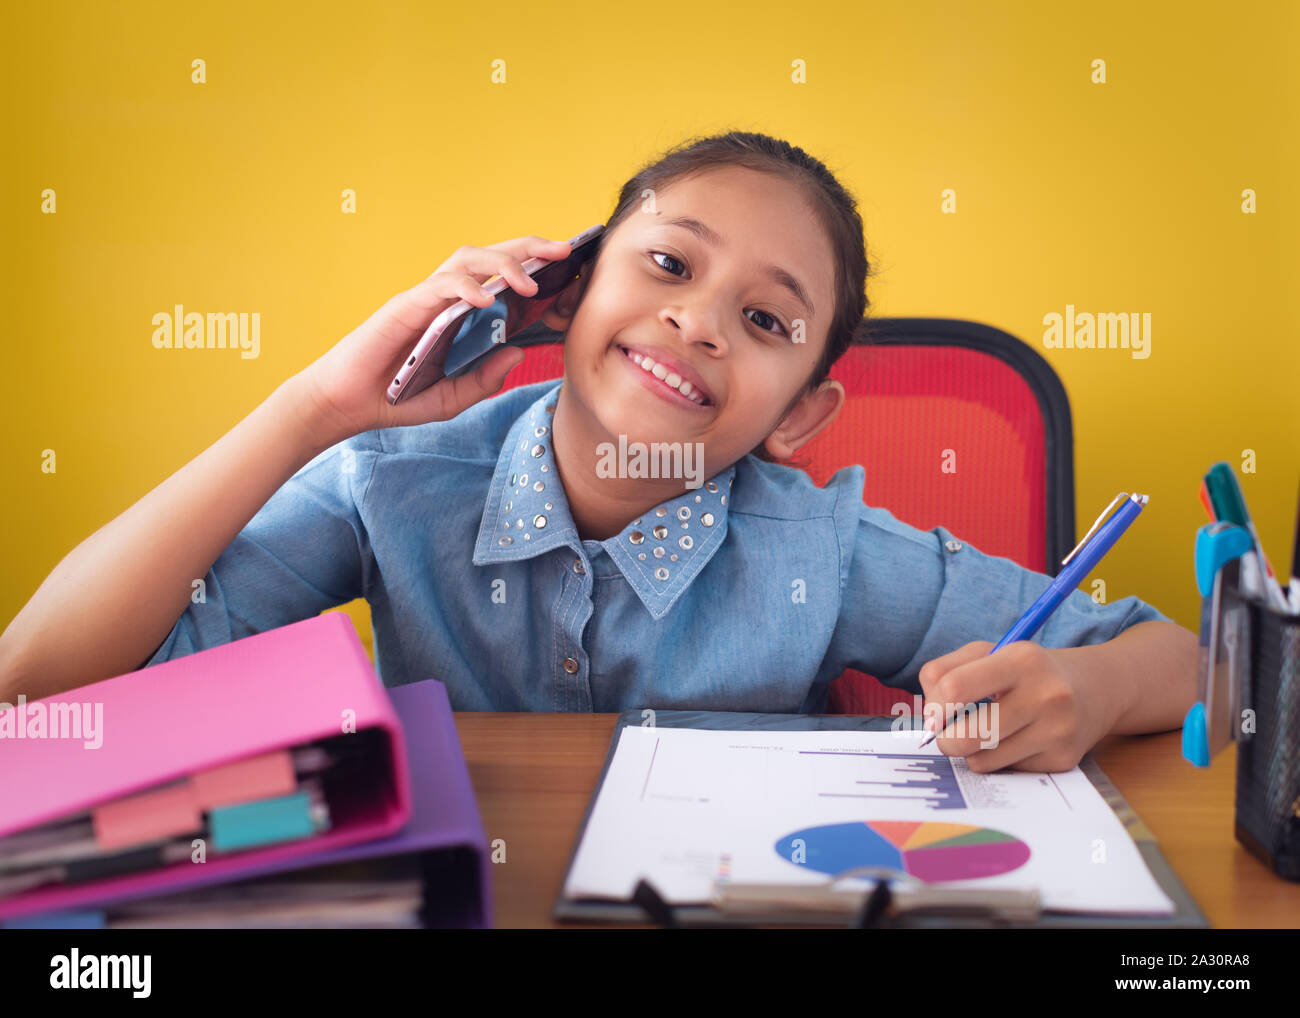 Cute girl using mobile phone et souriant sur le fond jaune isolé 24. Concept de réalisation. Banque D'Images